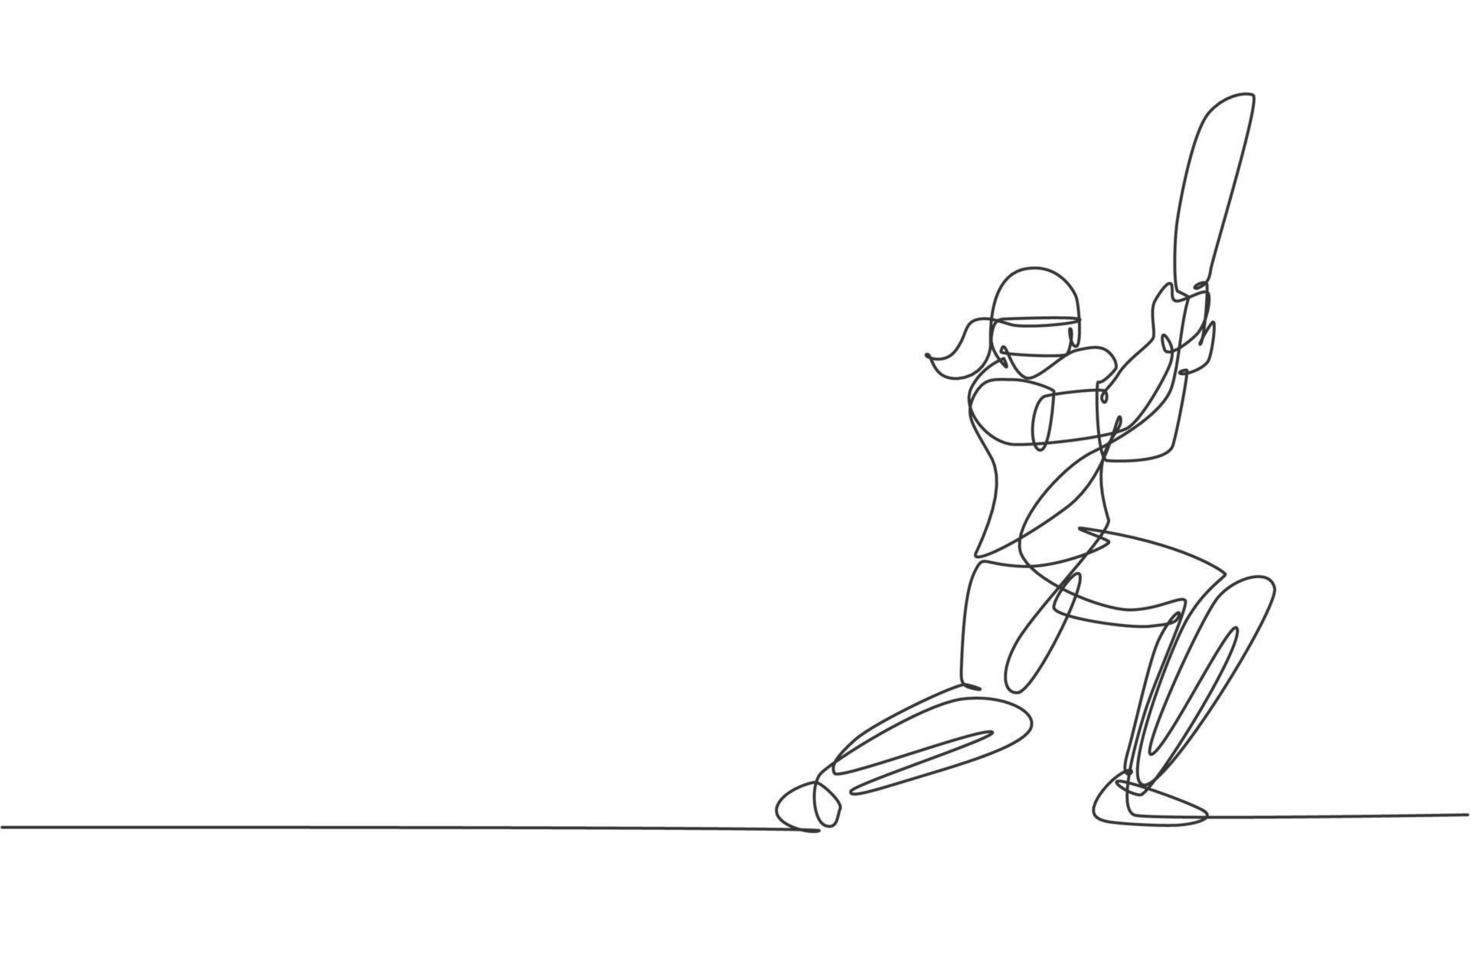 eine durchgehende Strichzeichnung einer jungen glücklichen Cricketspielerin, die sich darauf konzentriert, den Ball auf der Feldvektorillustration zu schlagen. Leistungssportkonzept. dynamisches einzeiliges zeichnungsdesign für werbeplakate vektor